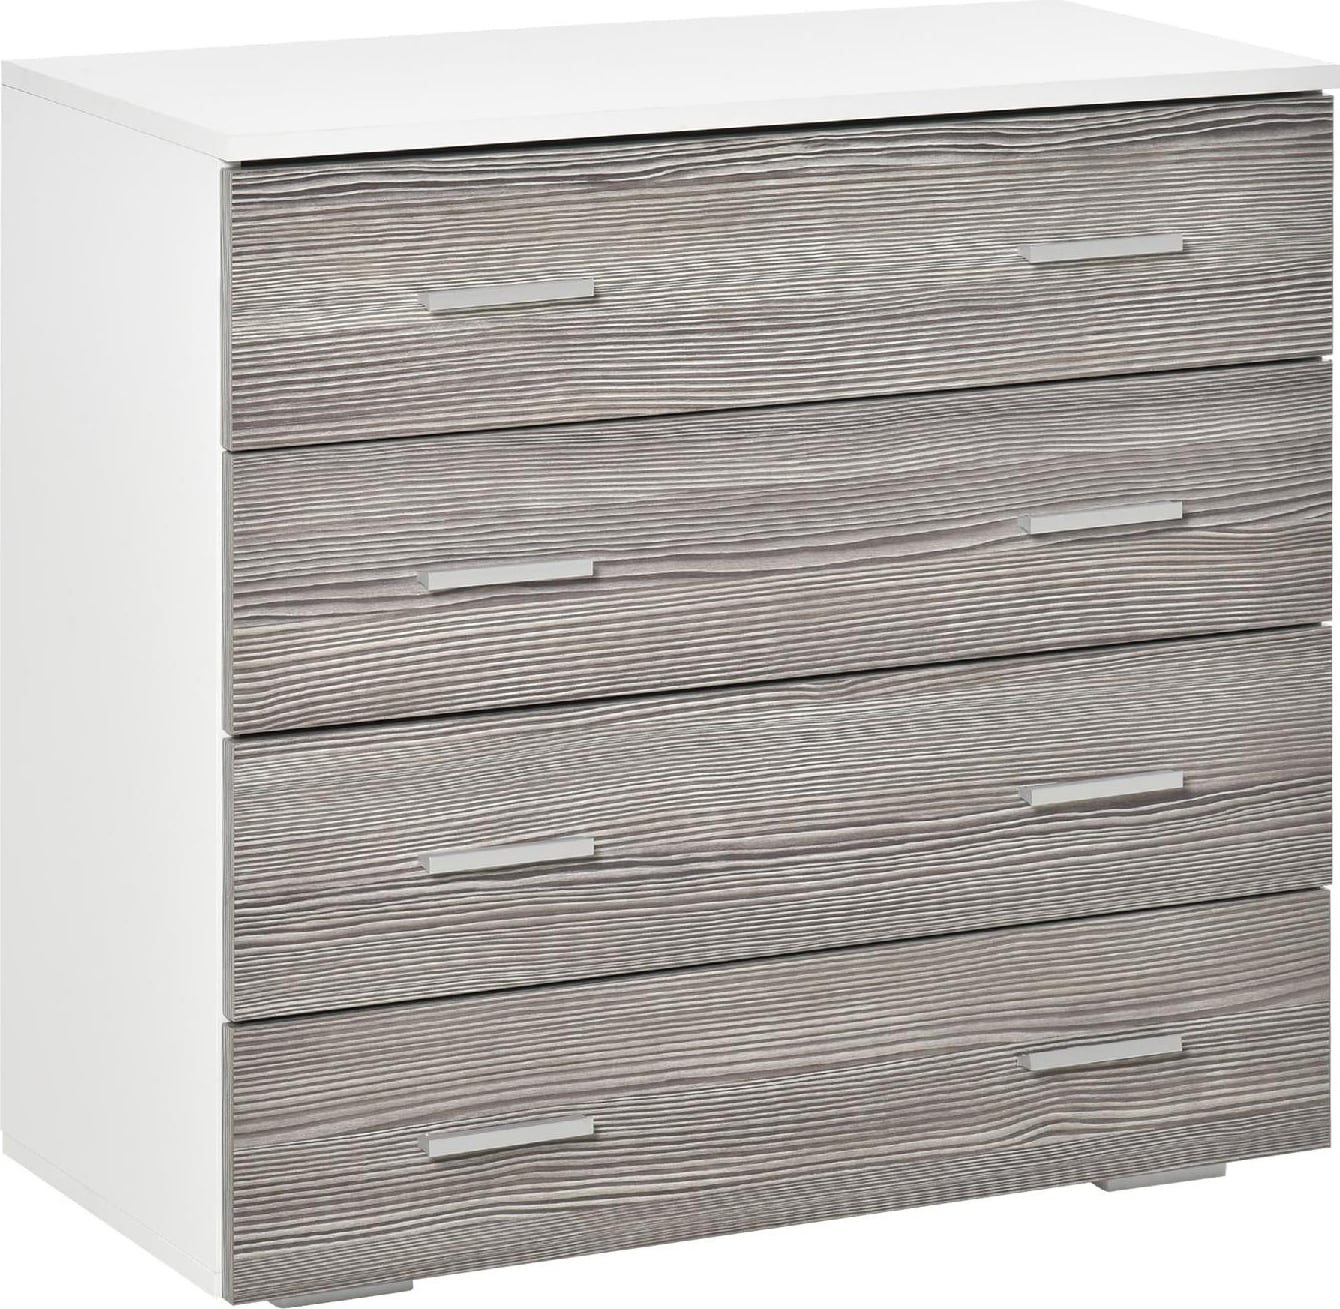 dechome 385gyek831 cassettiere con 4 cassetti con maniglie in alluminio e struttura in legno 76x35x72cm bianco grigio - 385gyek831